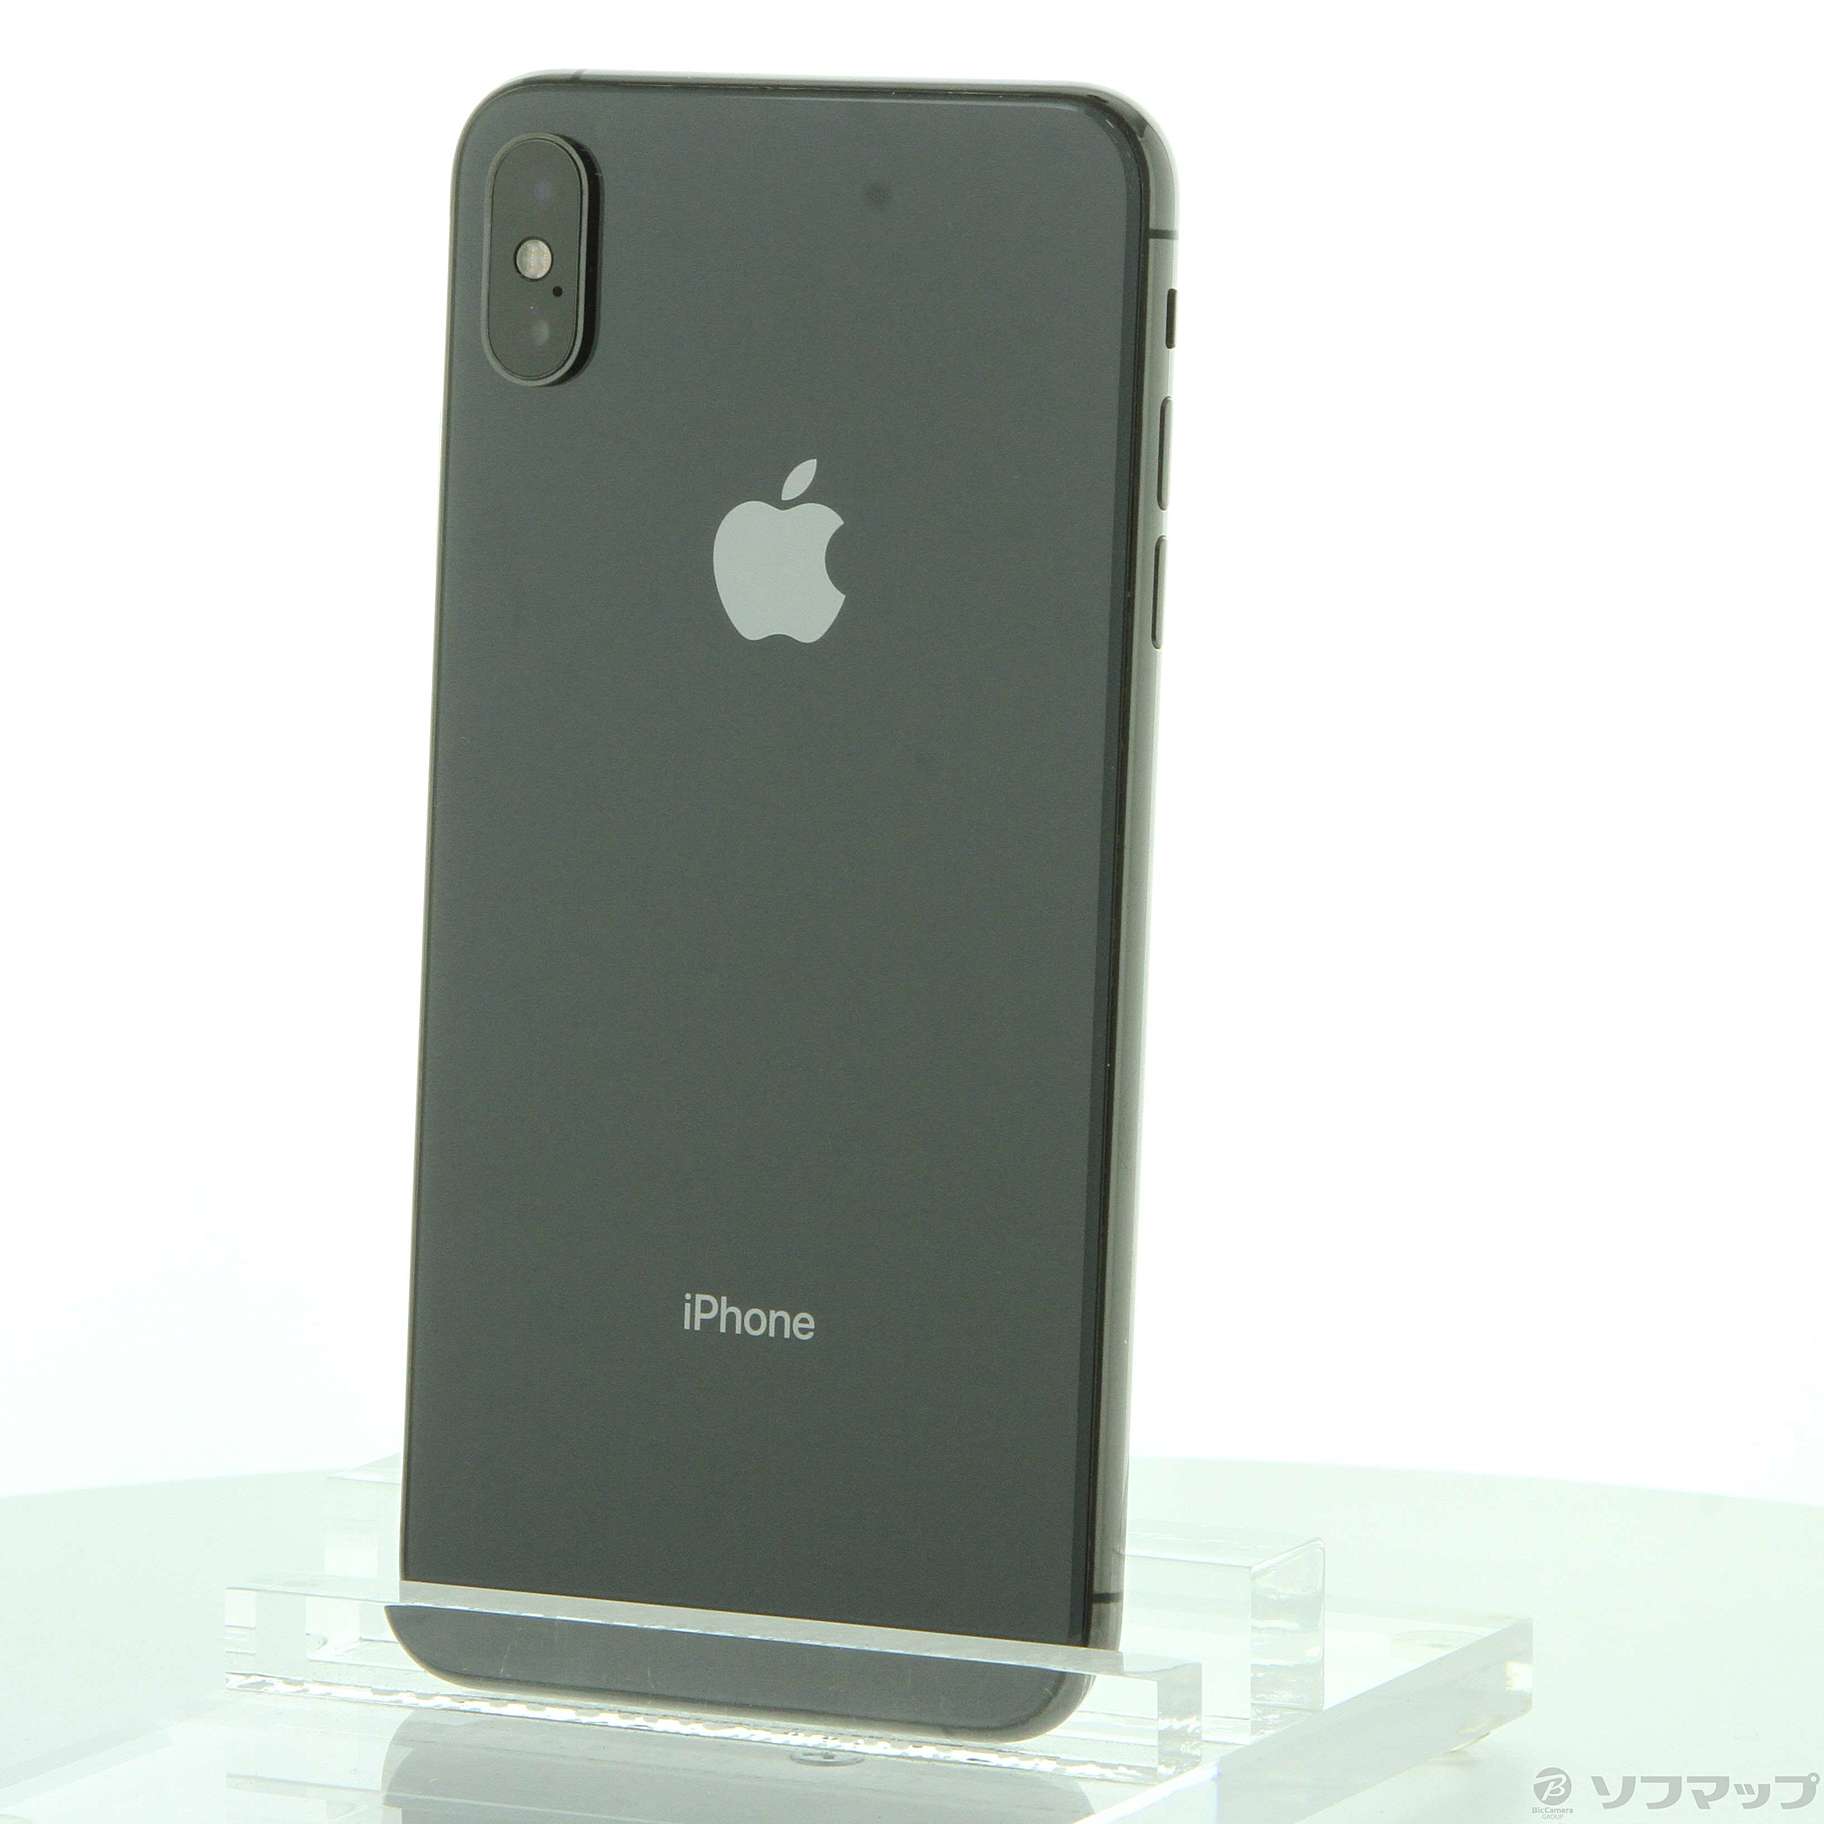 11,700円Apple iPhone XS Max 64GB Gray SIMフリー